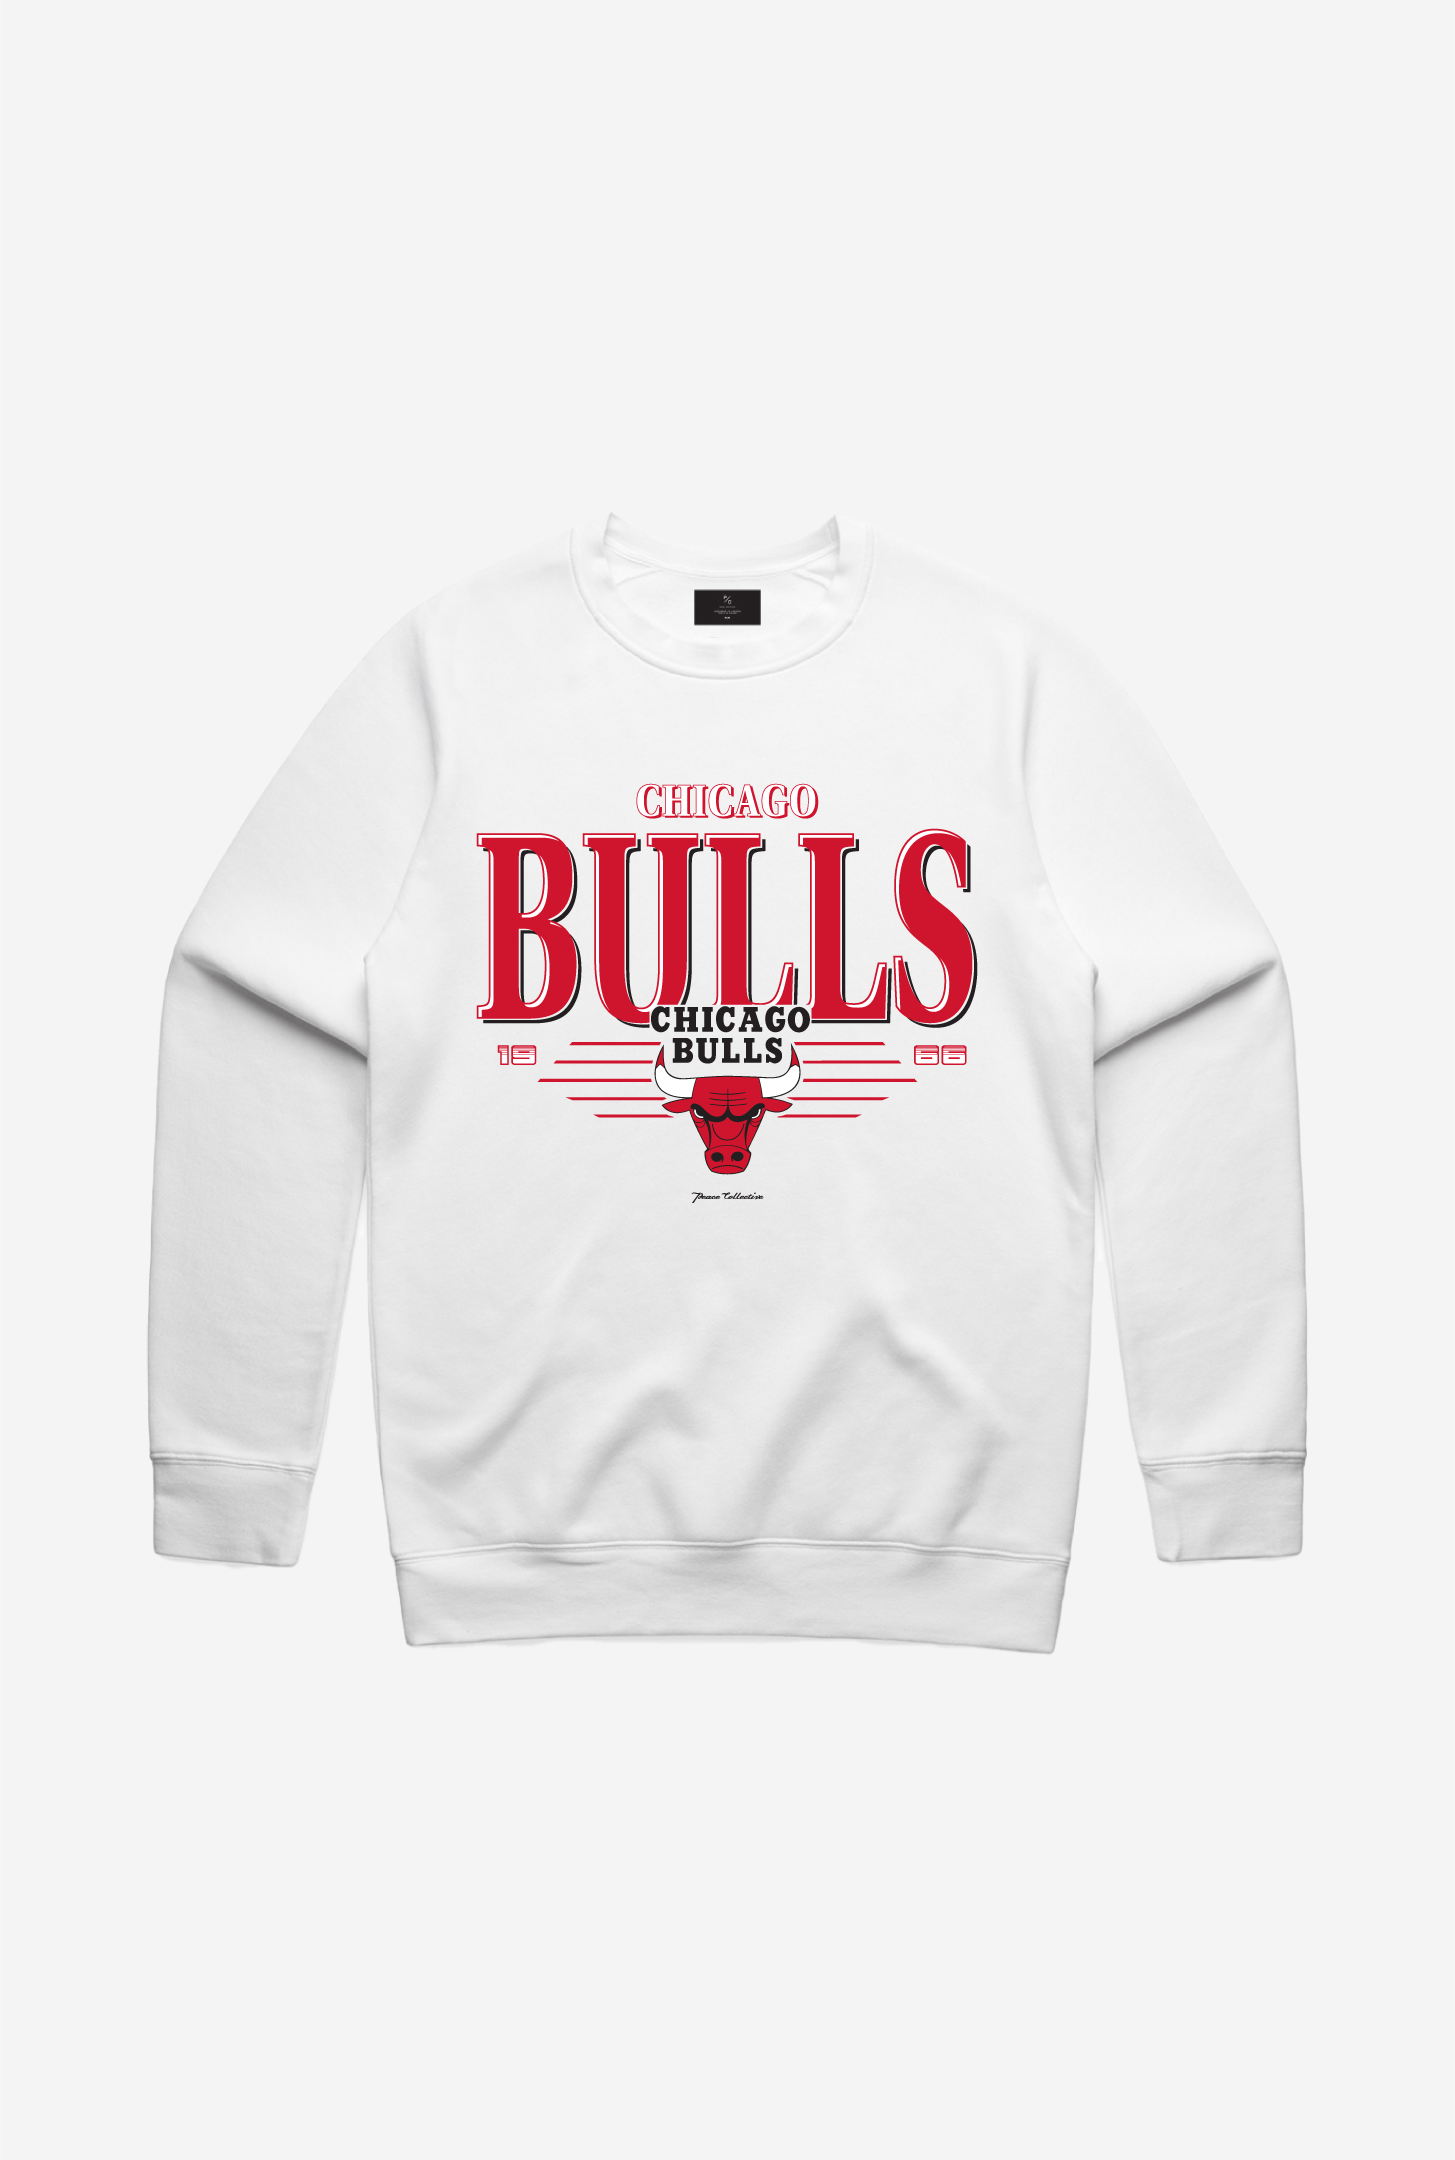 Chicago Bulls Signature Crewneck - White